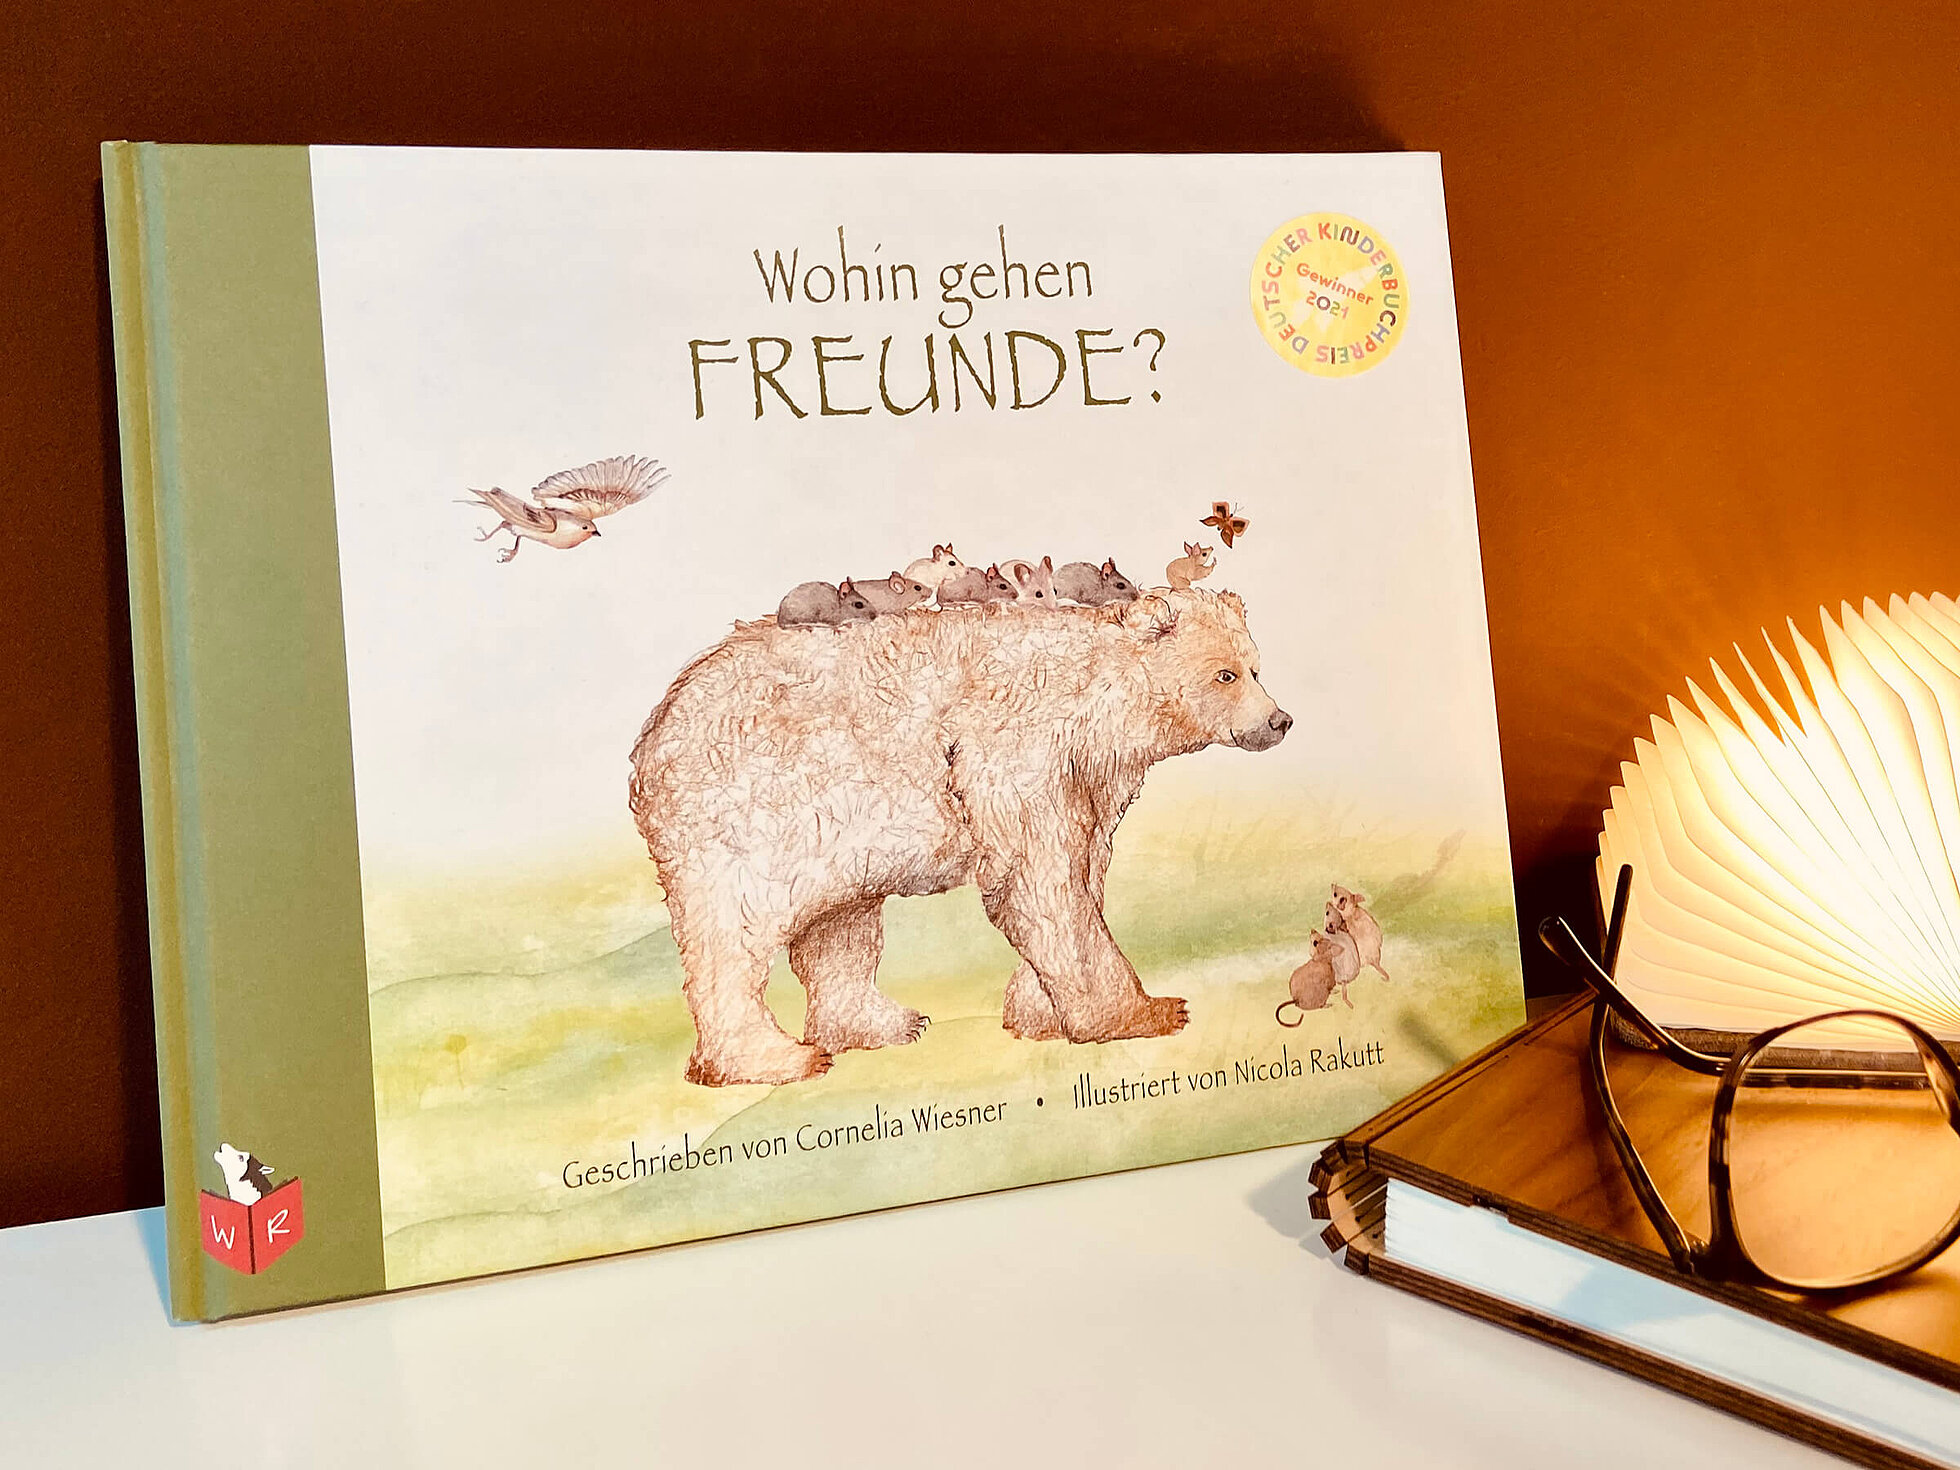 Kinderbuch «Wohin gehen Freunde?» – geschrieben von Cornelia Wiesner und illustriert von Nicola Rakutt